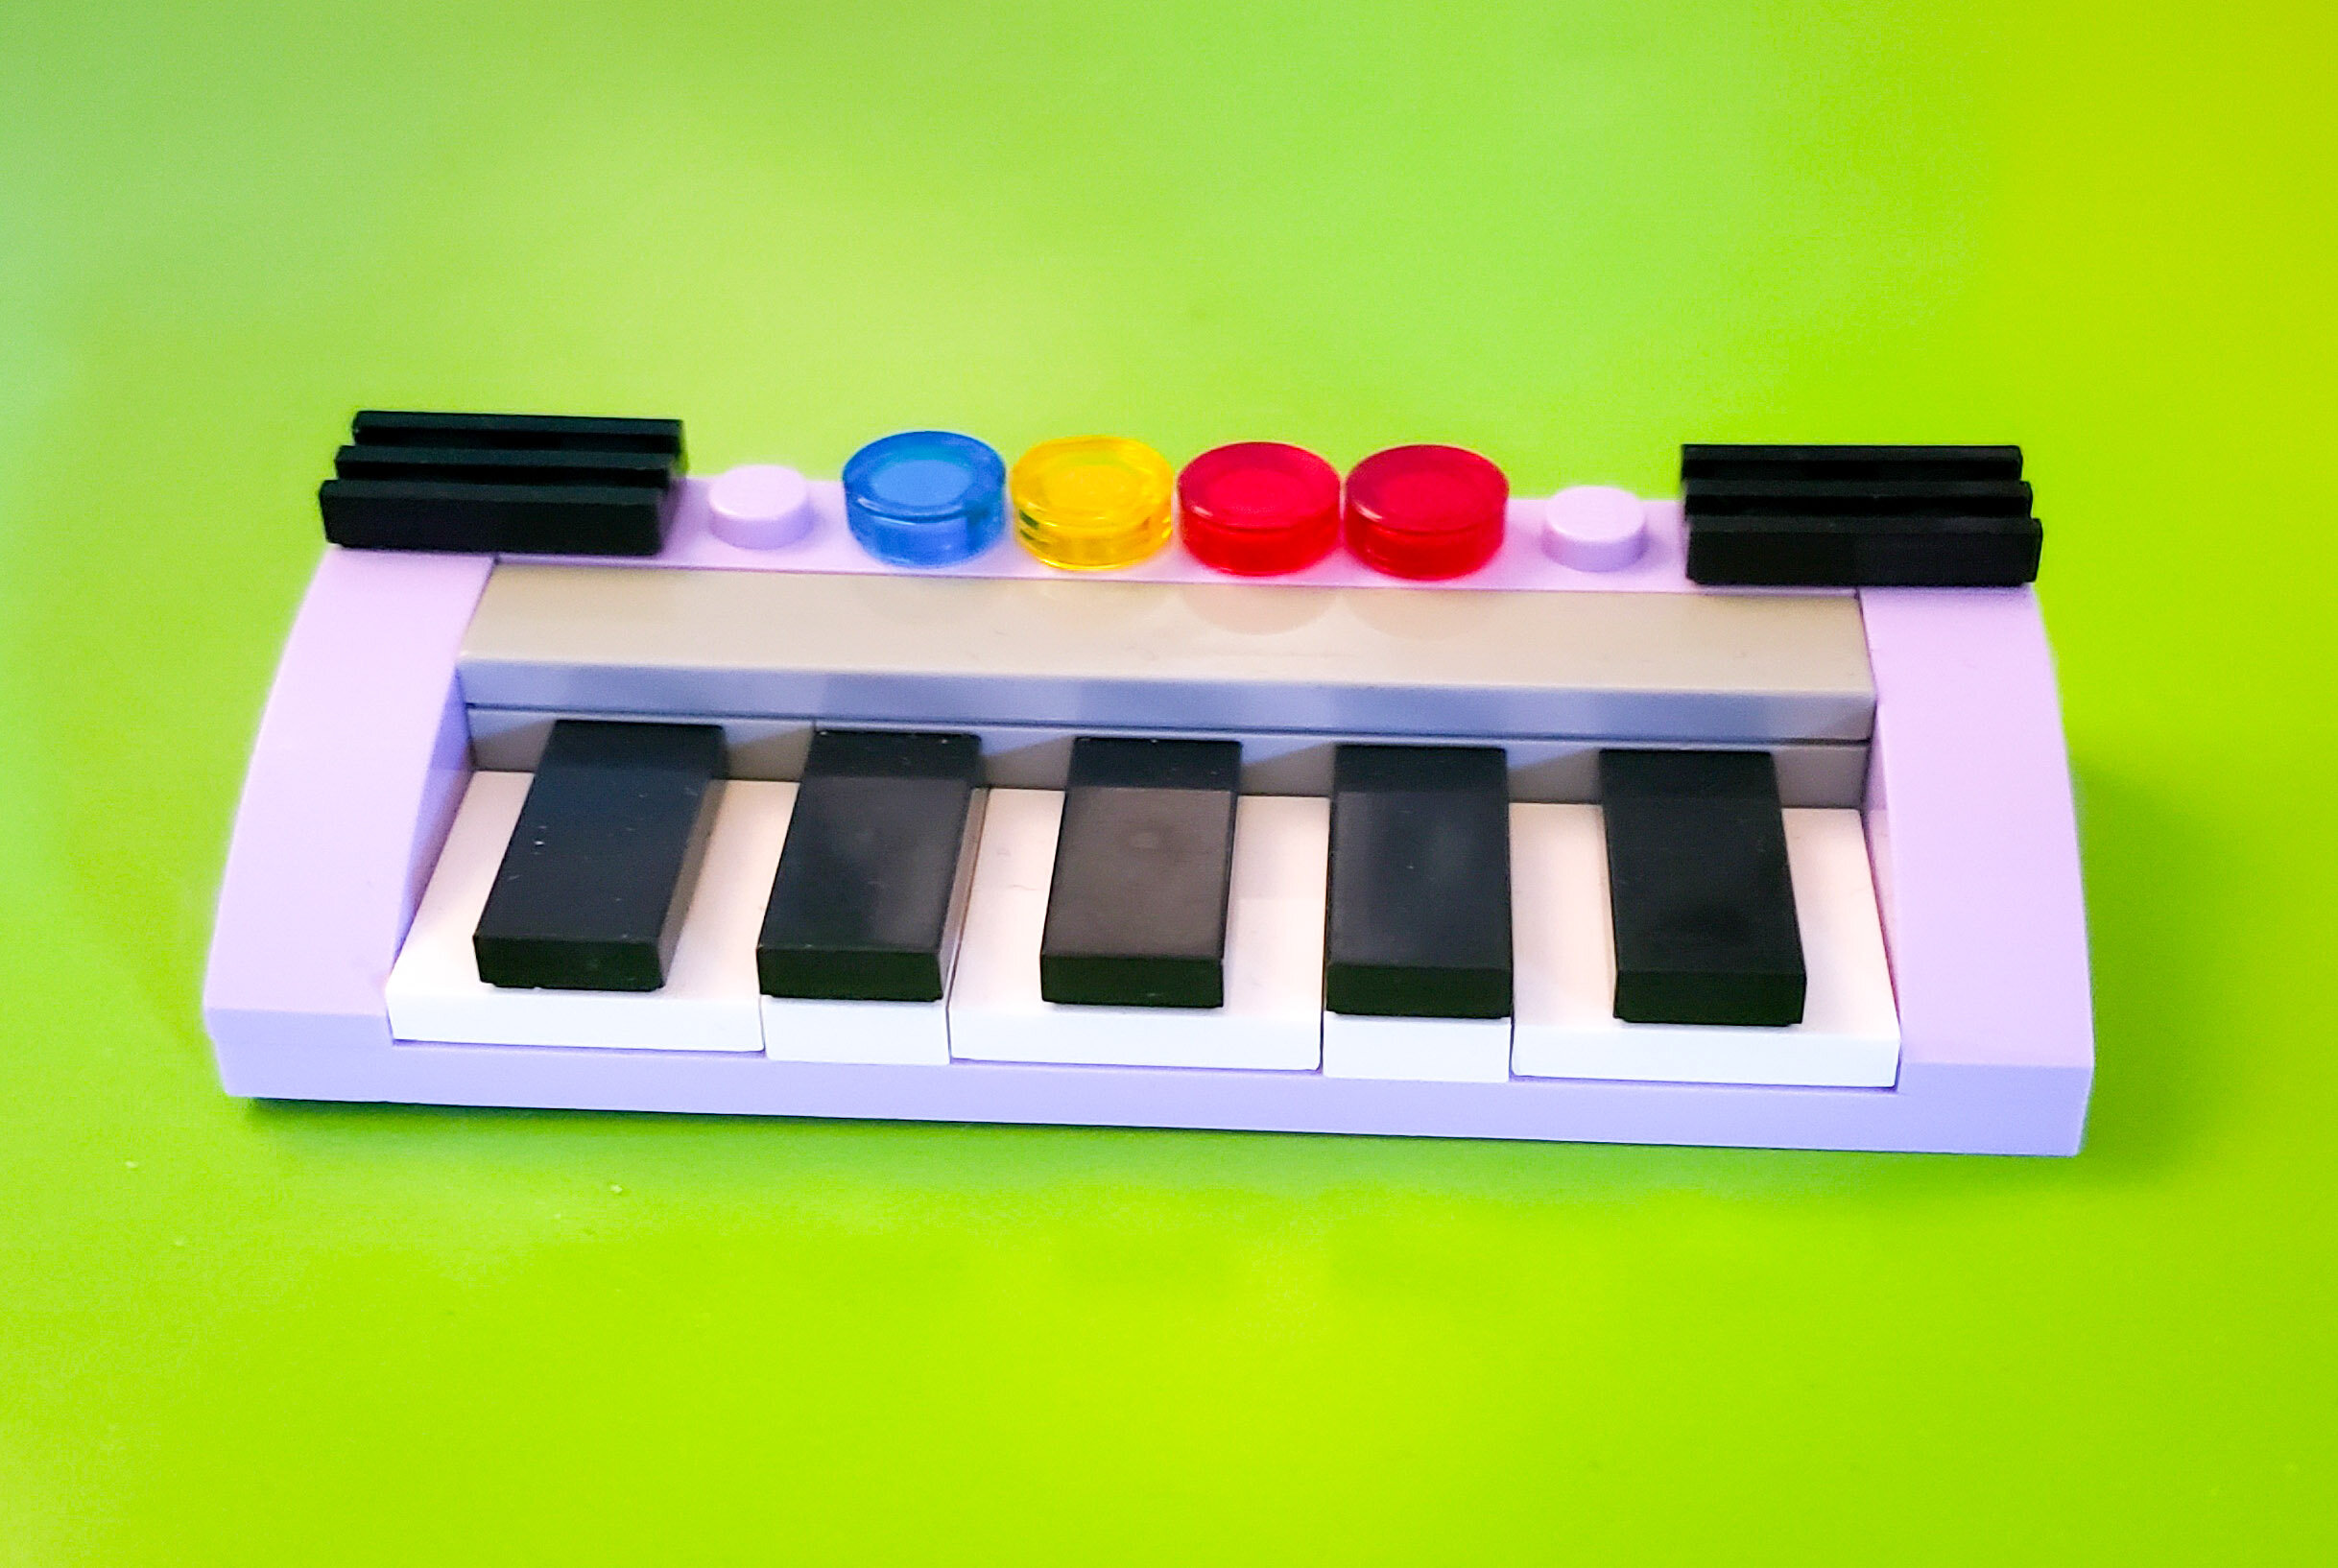 Piano lego piano de brinquedo multicolorido escola de música